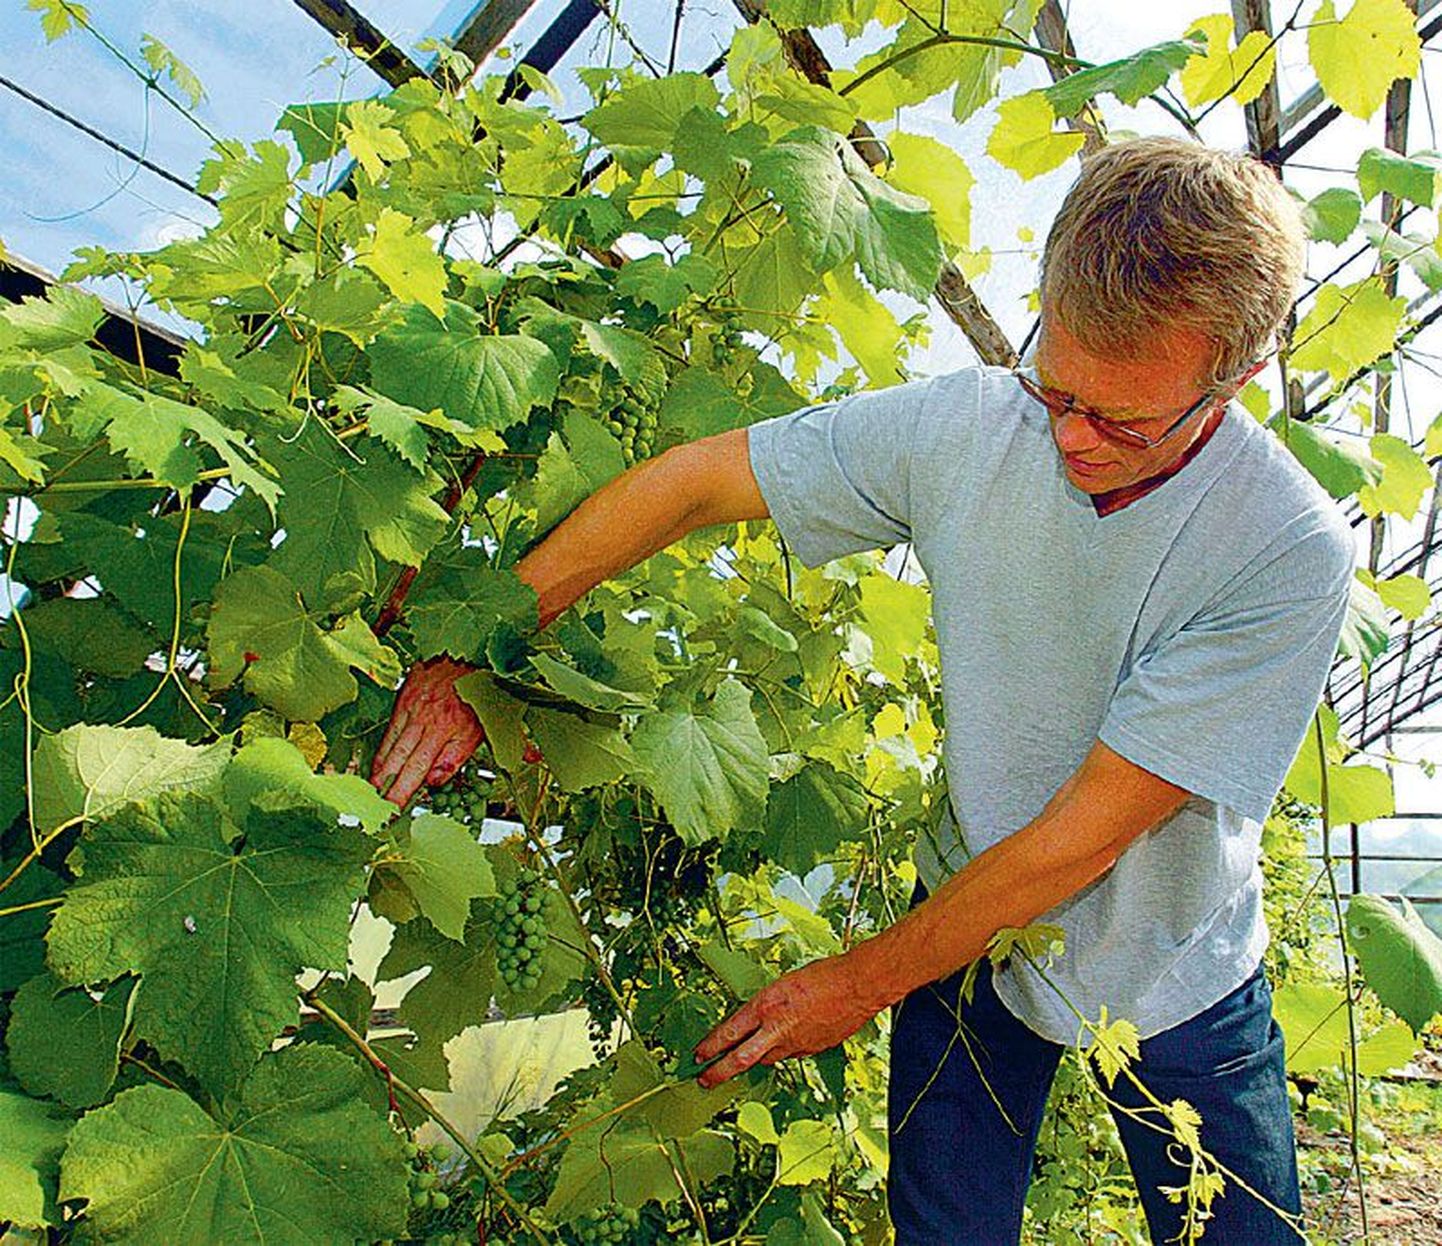 Tõrvaaugu talu peremees Harri Poom näitab oma kasvuhoones veel toorevõitu viinamarjakobaraid.